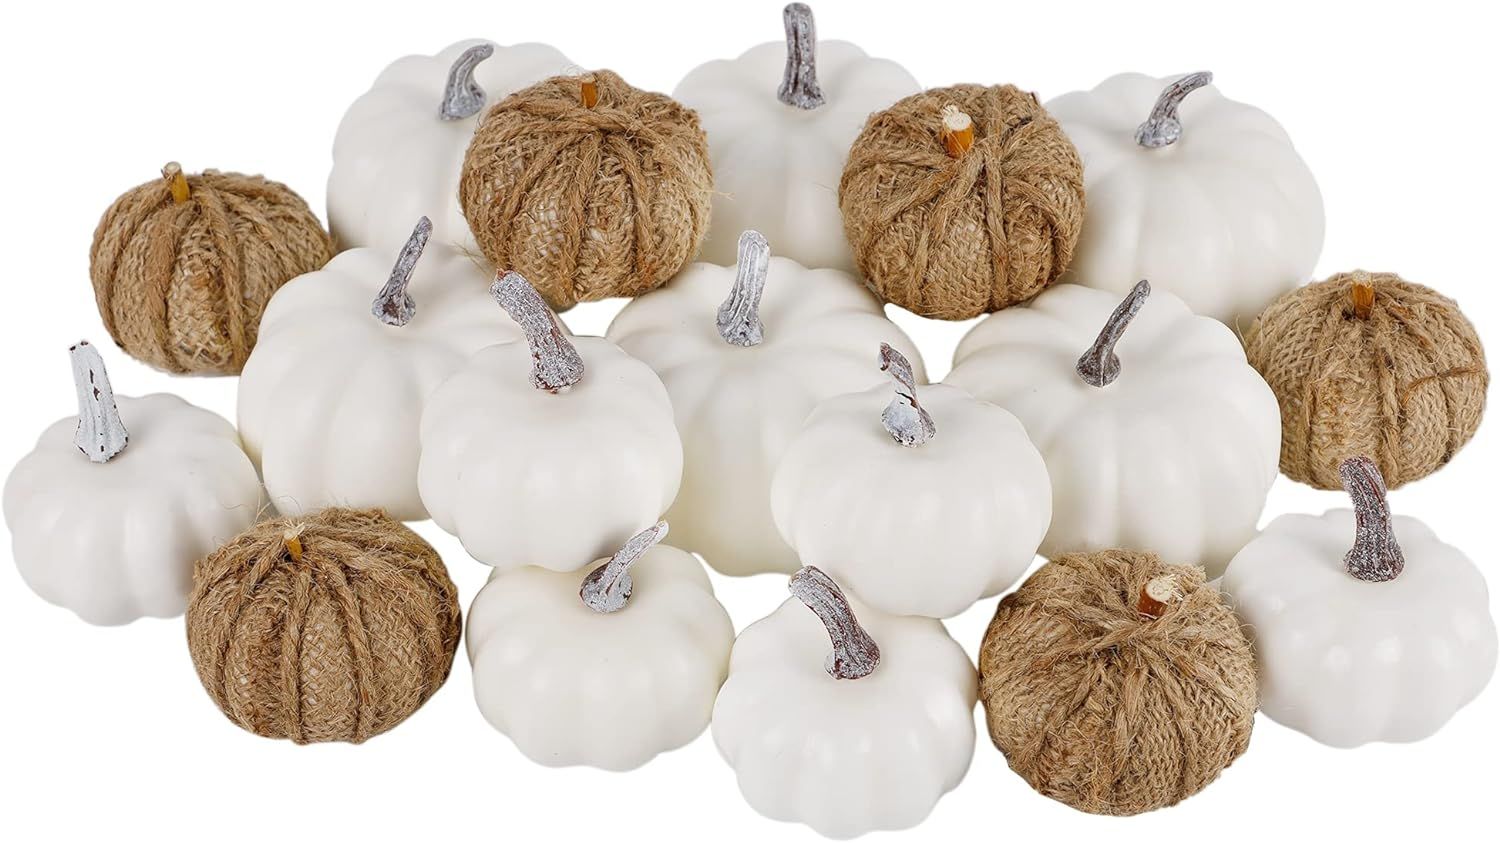 winemana 18 Pcs Thanksgiving Decorations Artificial Pumpkins, Set of 12 Foam Pumpkins and 6 Linen... | Amazon (US)